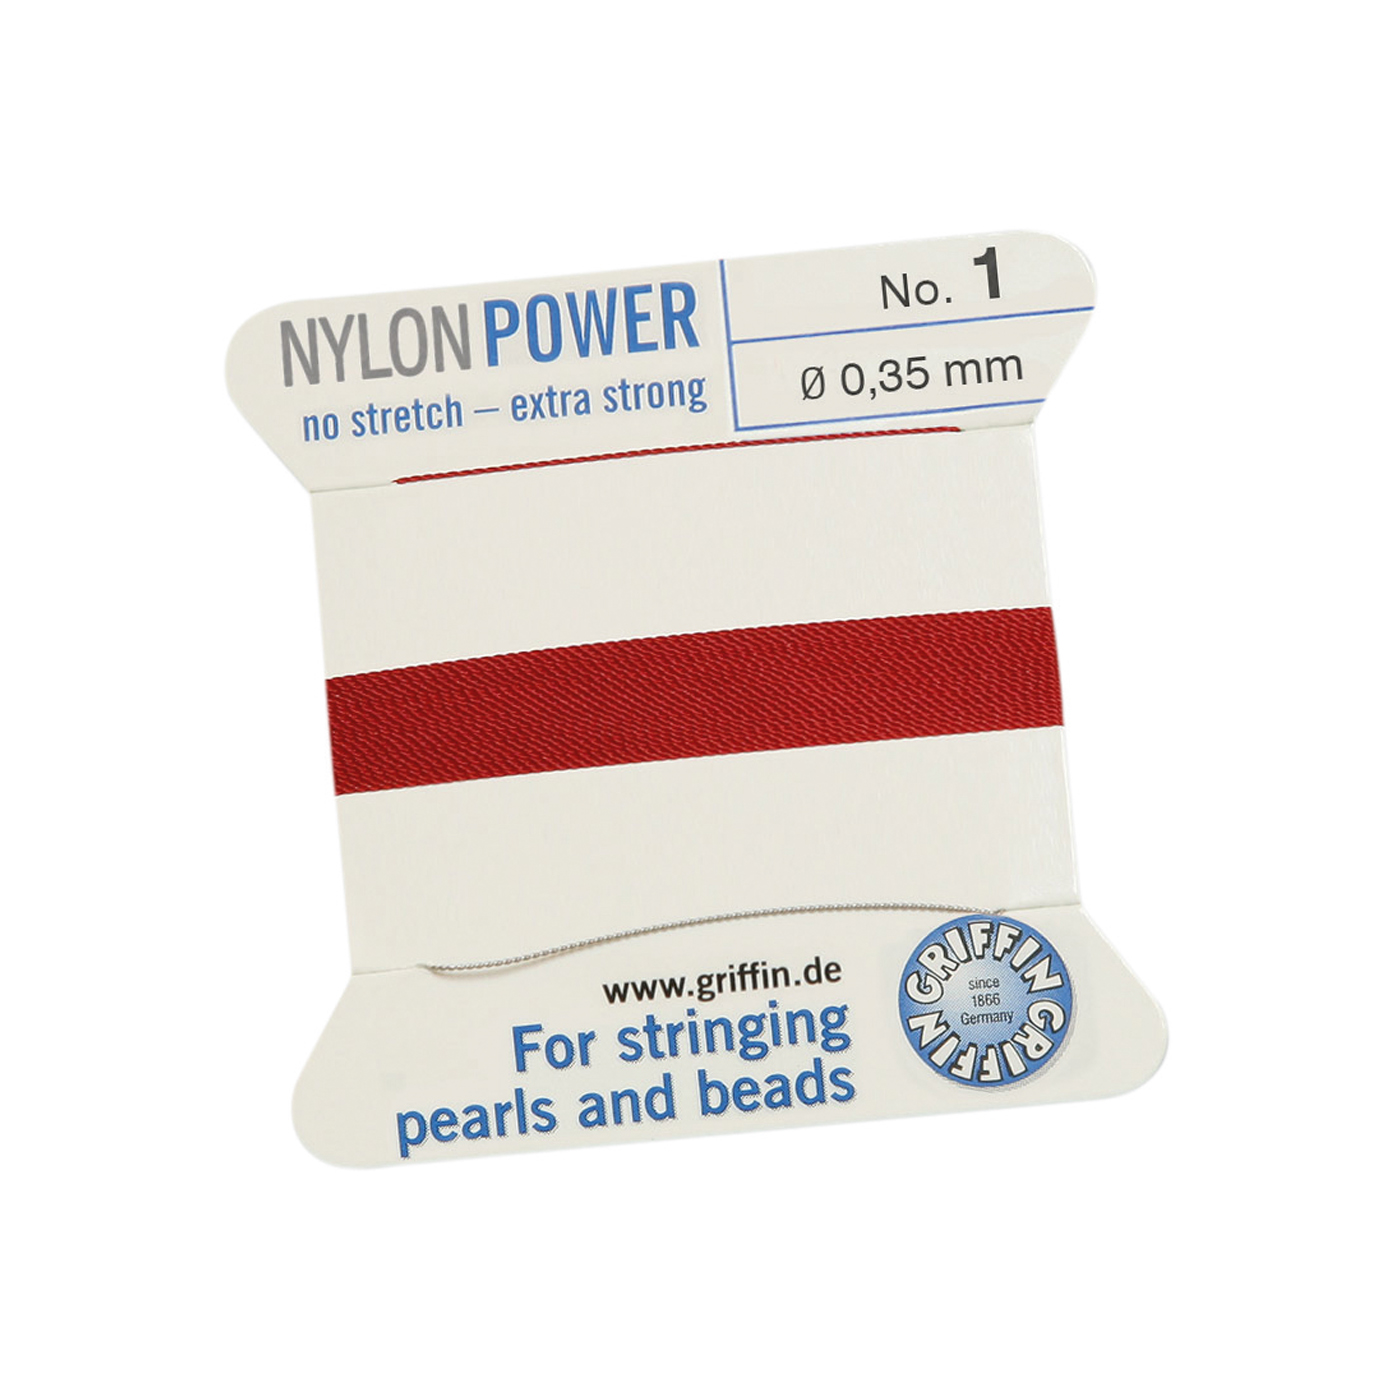 Bead Cord NylonPower, Garnet Red, No. 1 - 2 m